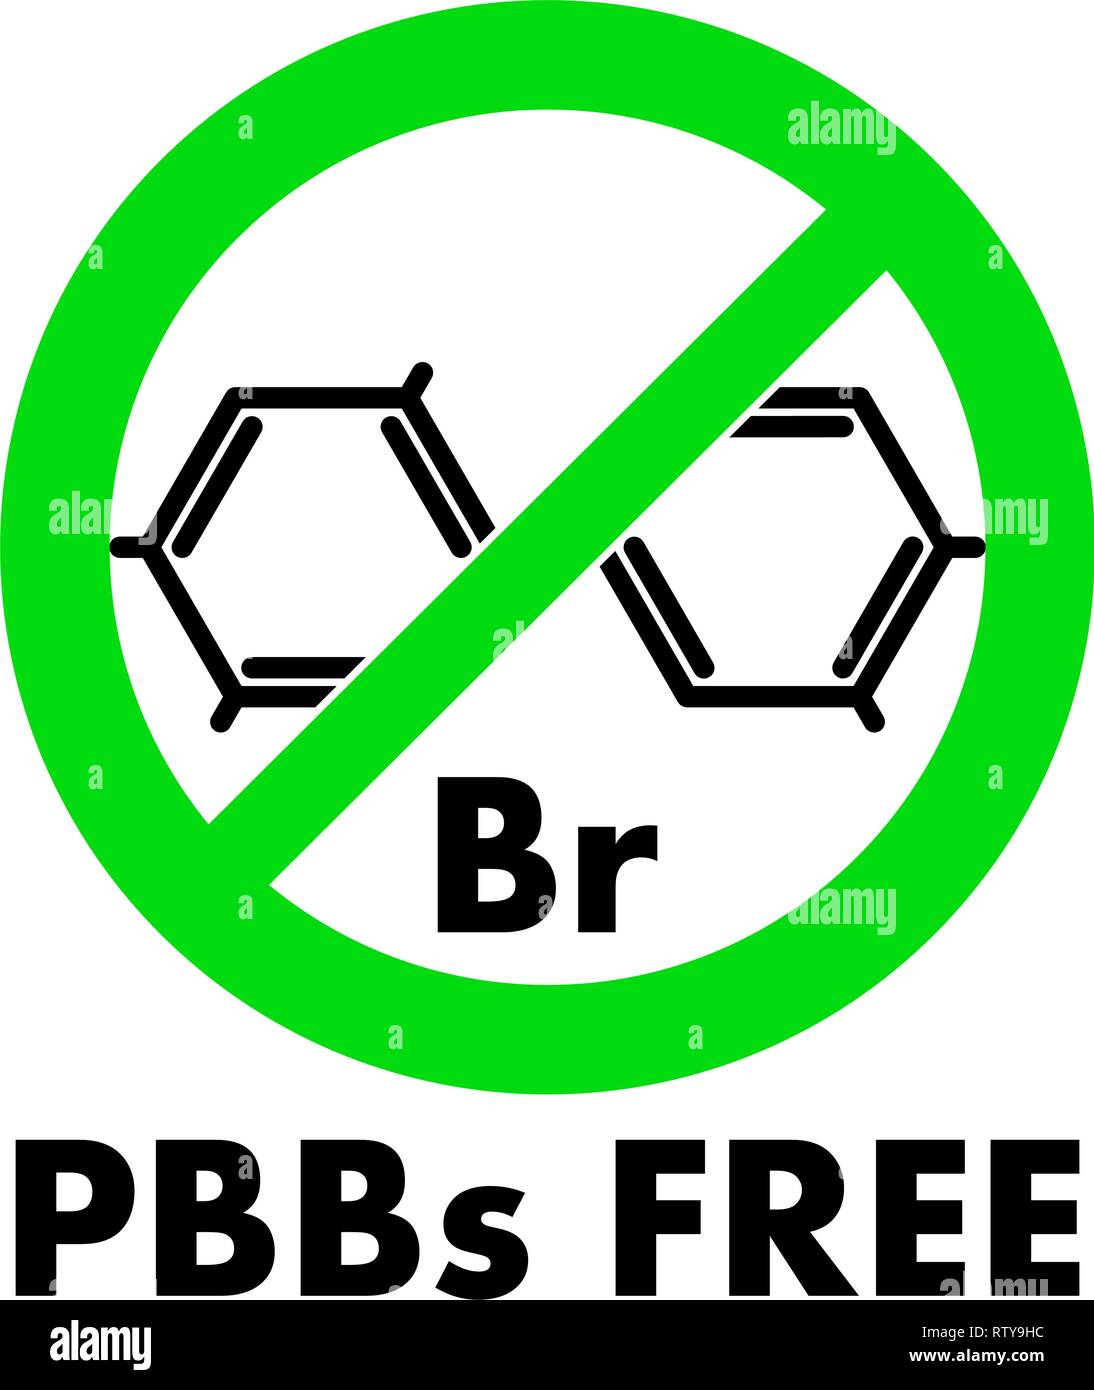 Pbb Free Icon. Polybromierte Biphenyle chemische Molekül und Buchstaben Br (chemisches Zeichen für Brom) im grünen Kreis mit Kreuz, mit Text unter. Stock Vektor